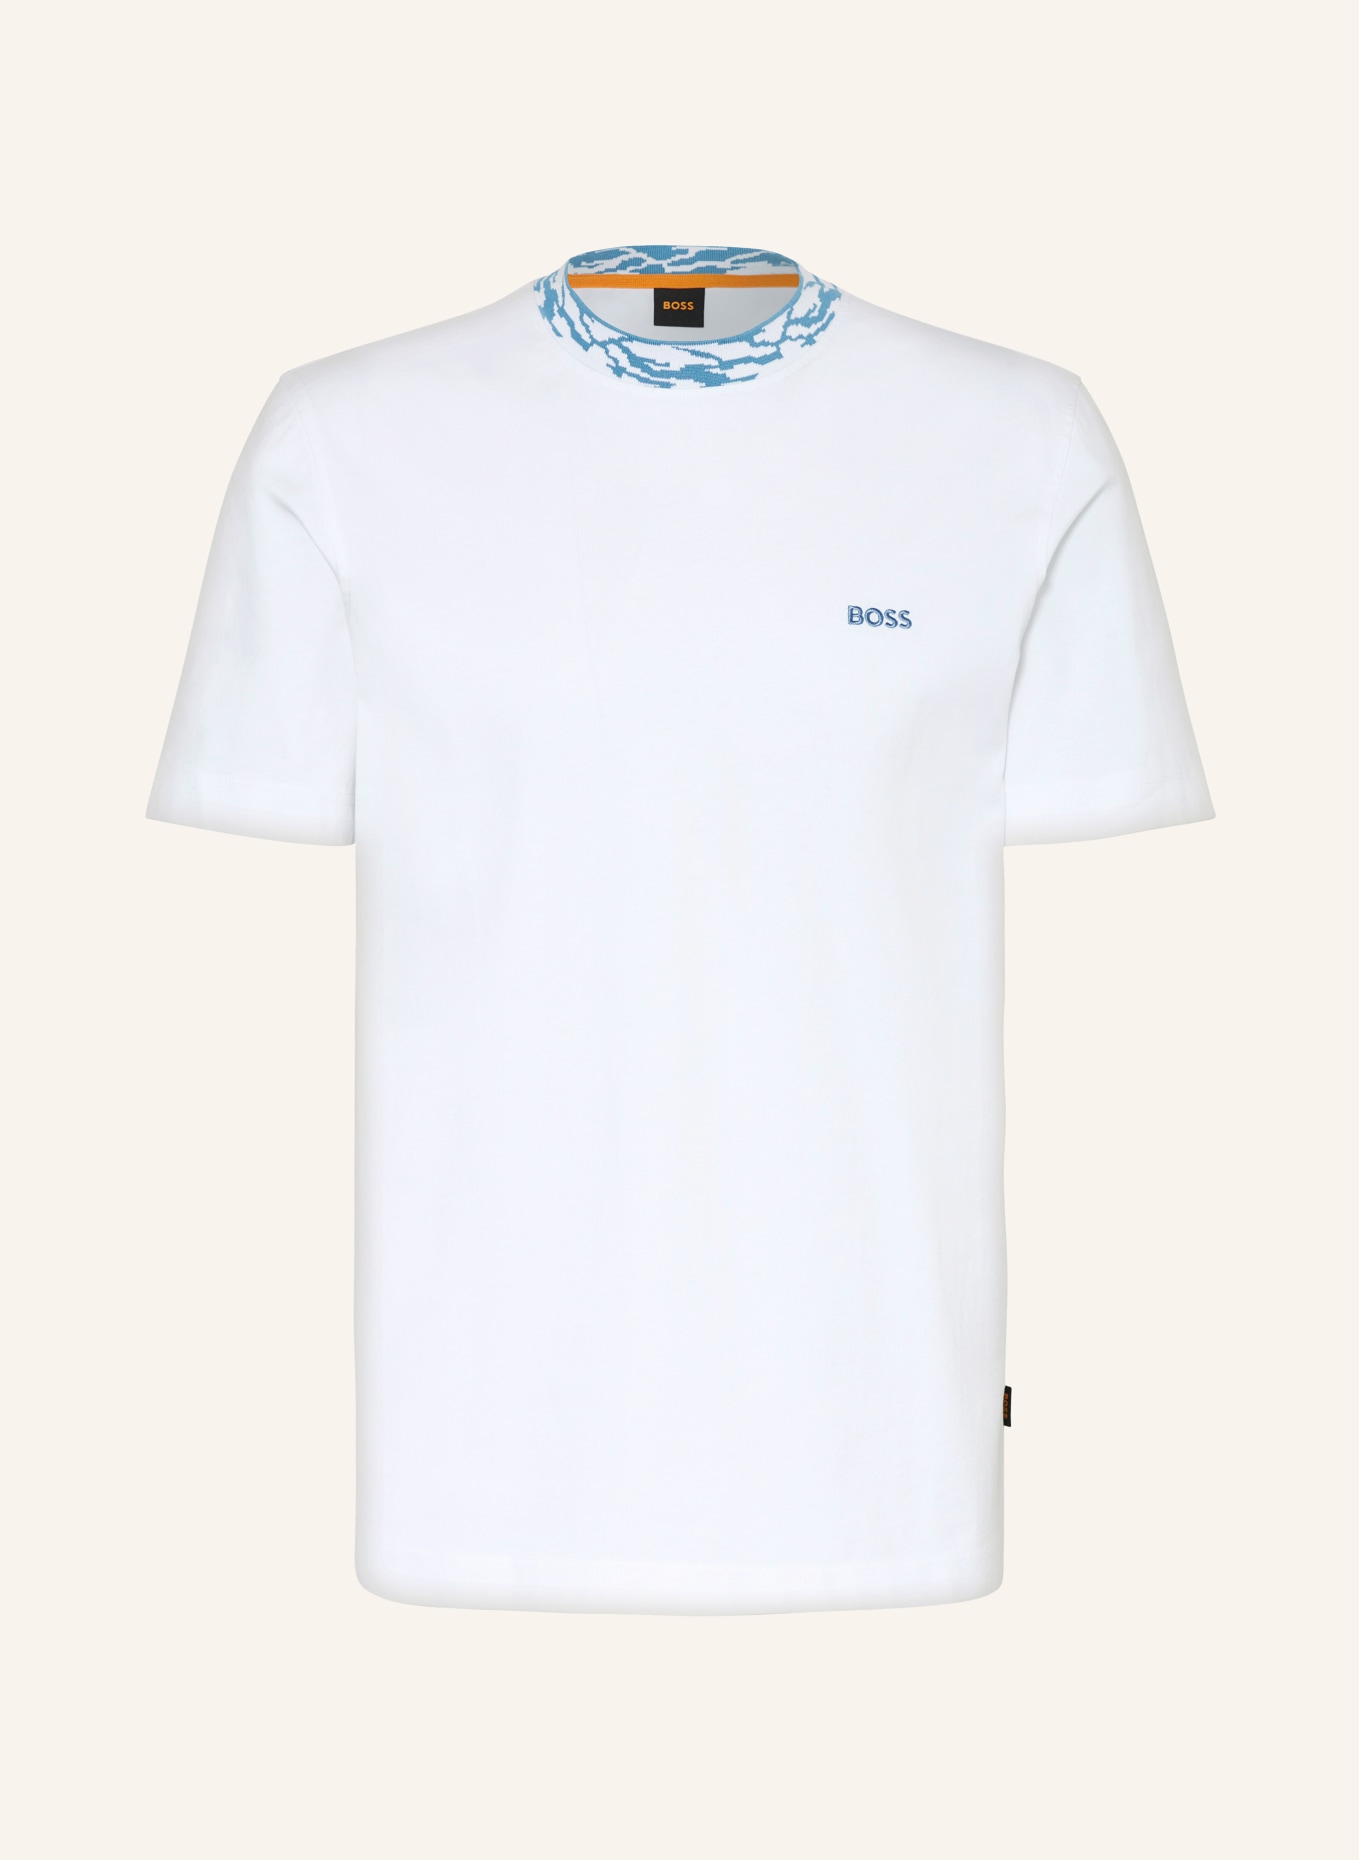 BOSS T-shirt OCEAN, Color: WHITE (Image 1)